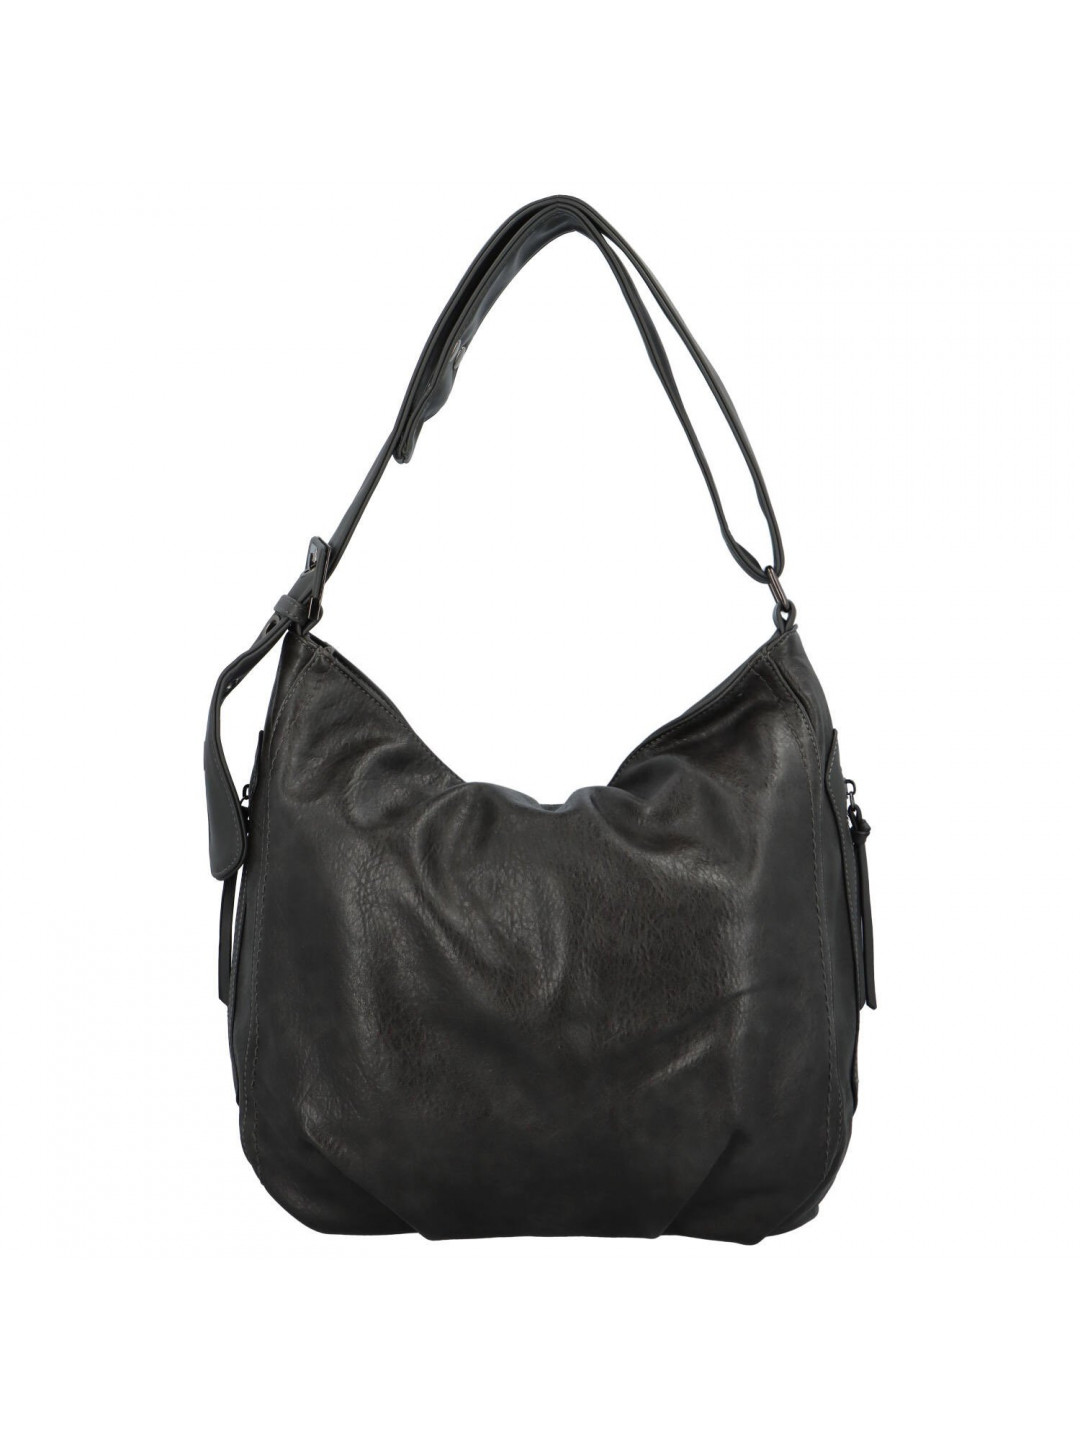 Dámská kabelka přes rameno šedá – Romina & Co Bags Corazon